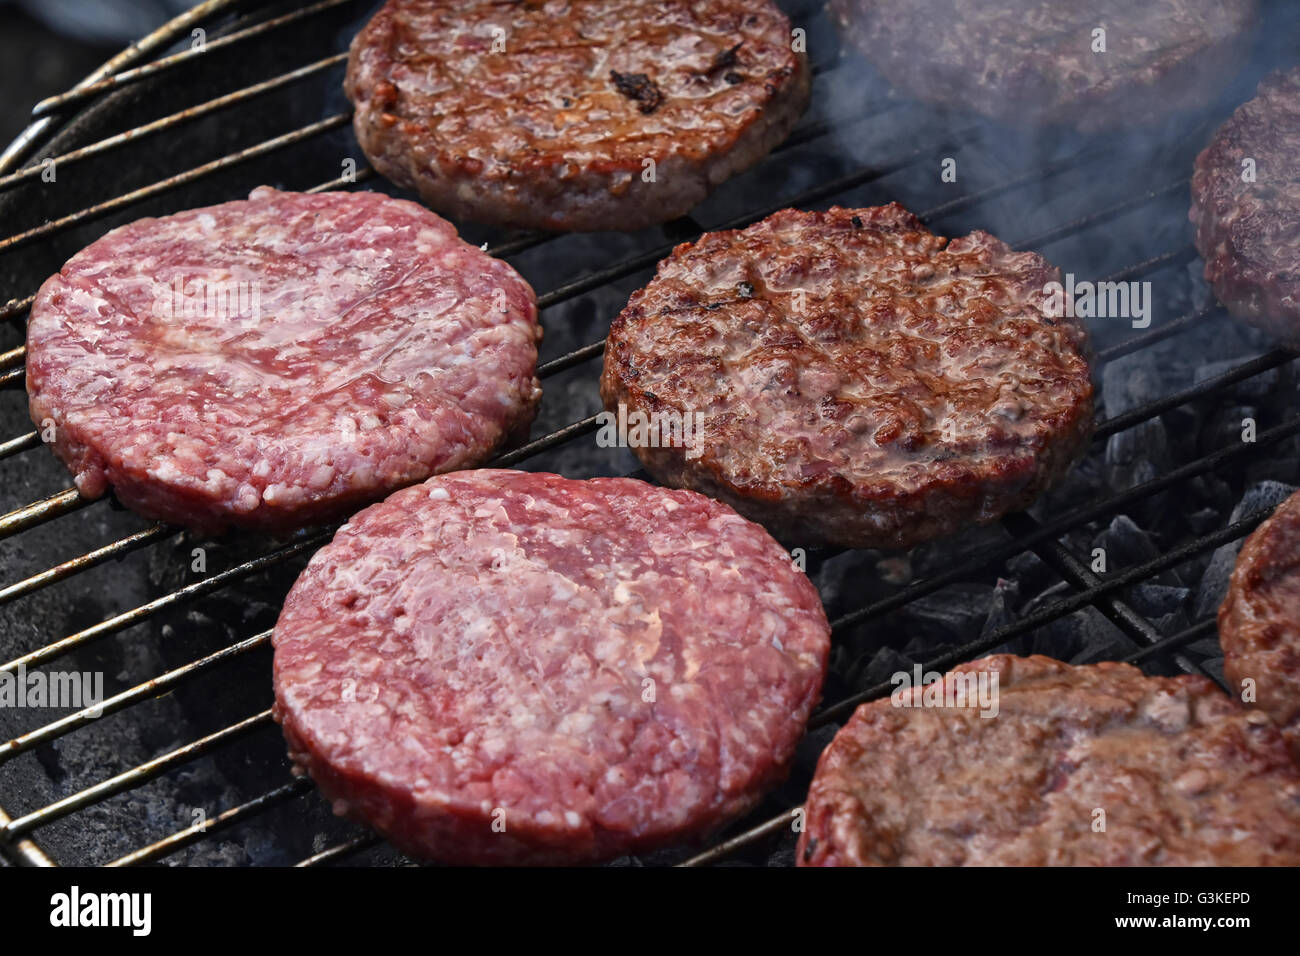 Materie e mezzo raro manzo cotto o carne di maiale barbecue hamburger per hamburger preparato alla griglia su fumo barbecue grill, close up Foto Stock